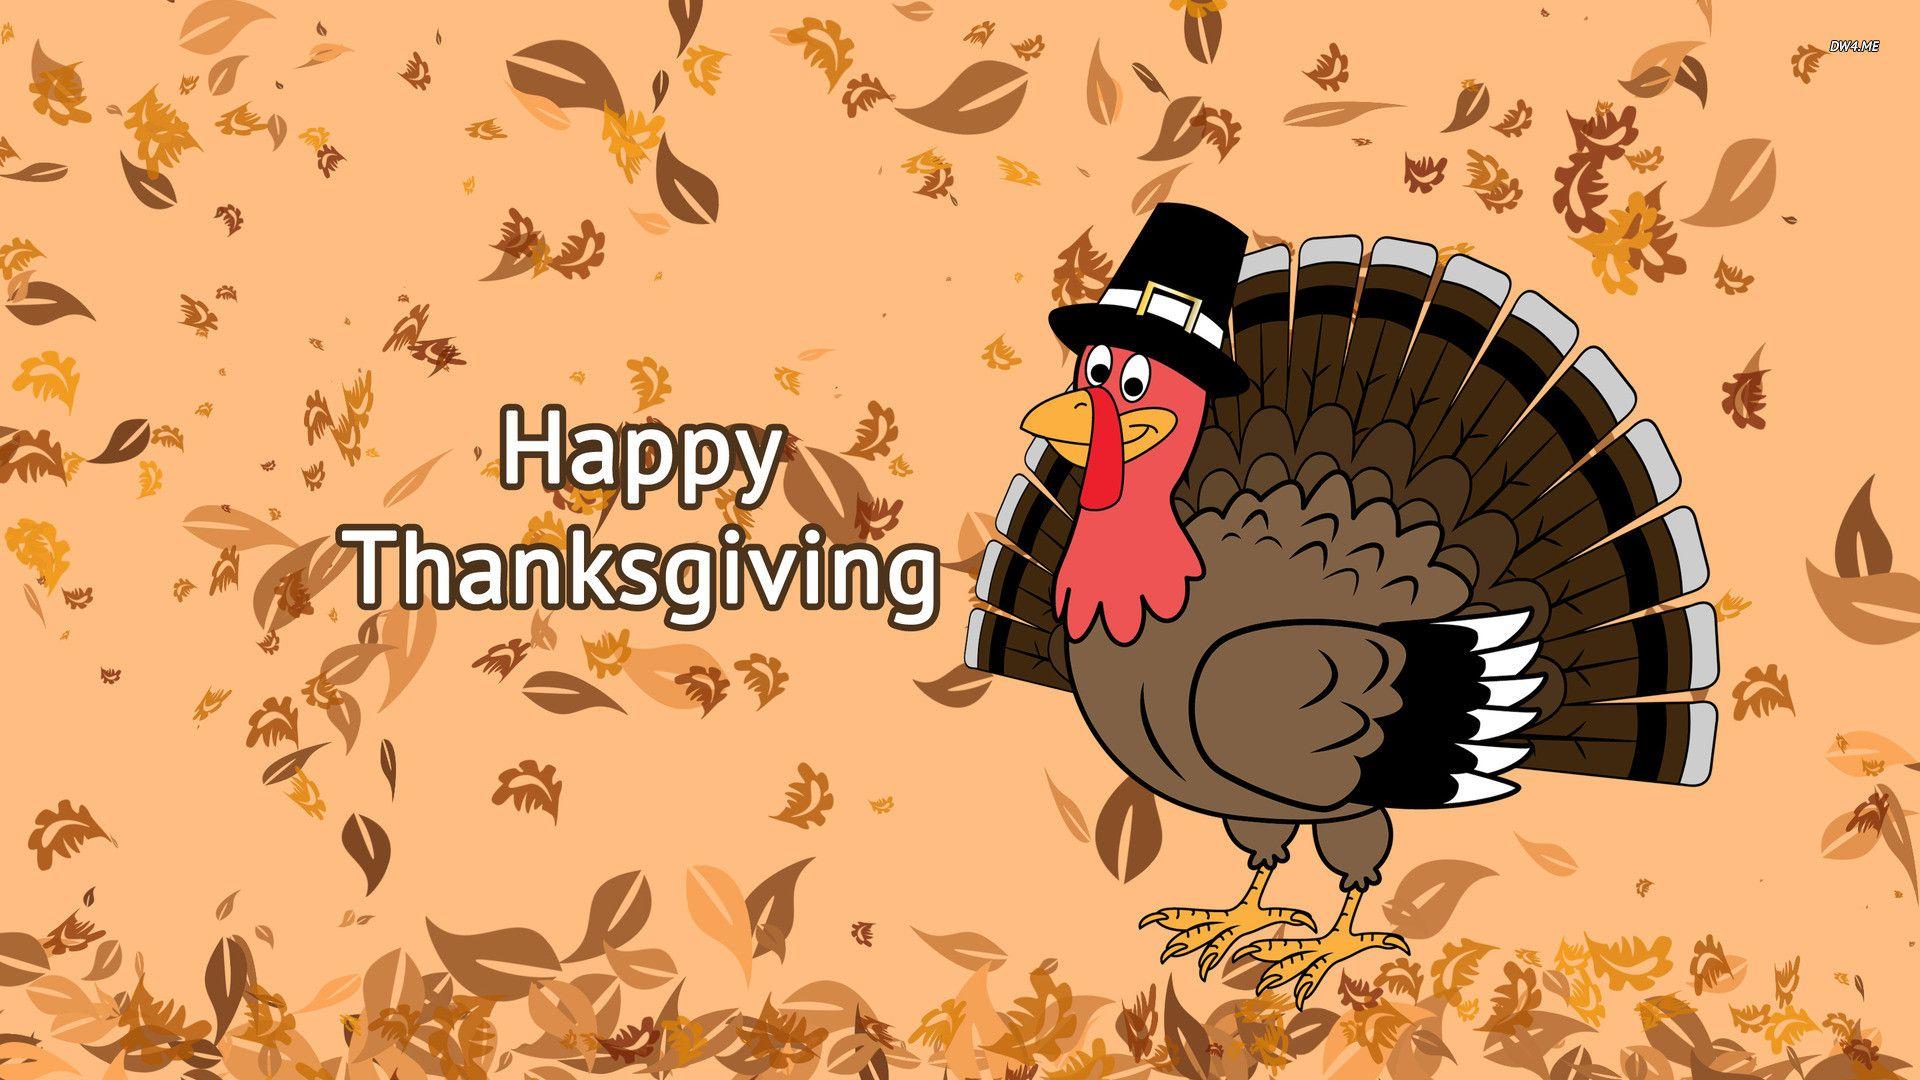 Happy Thanksgiving wallpaper wallpaper - #